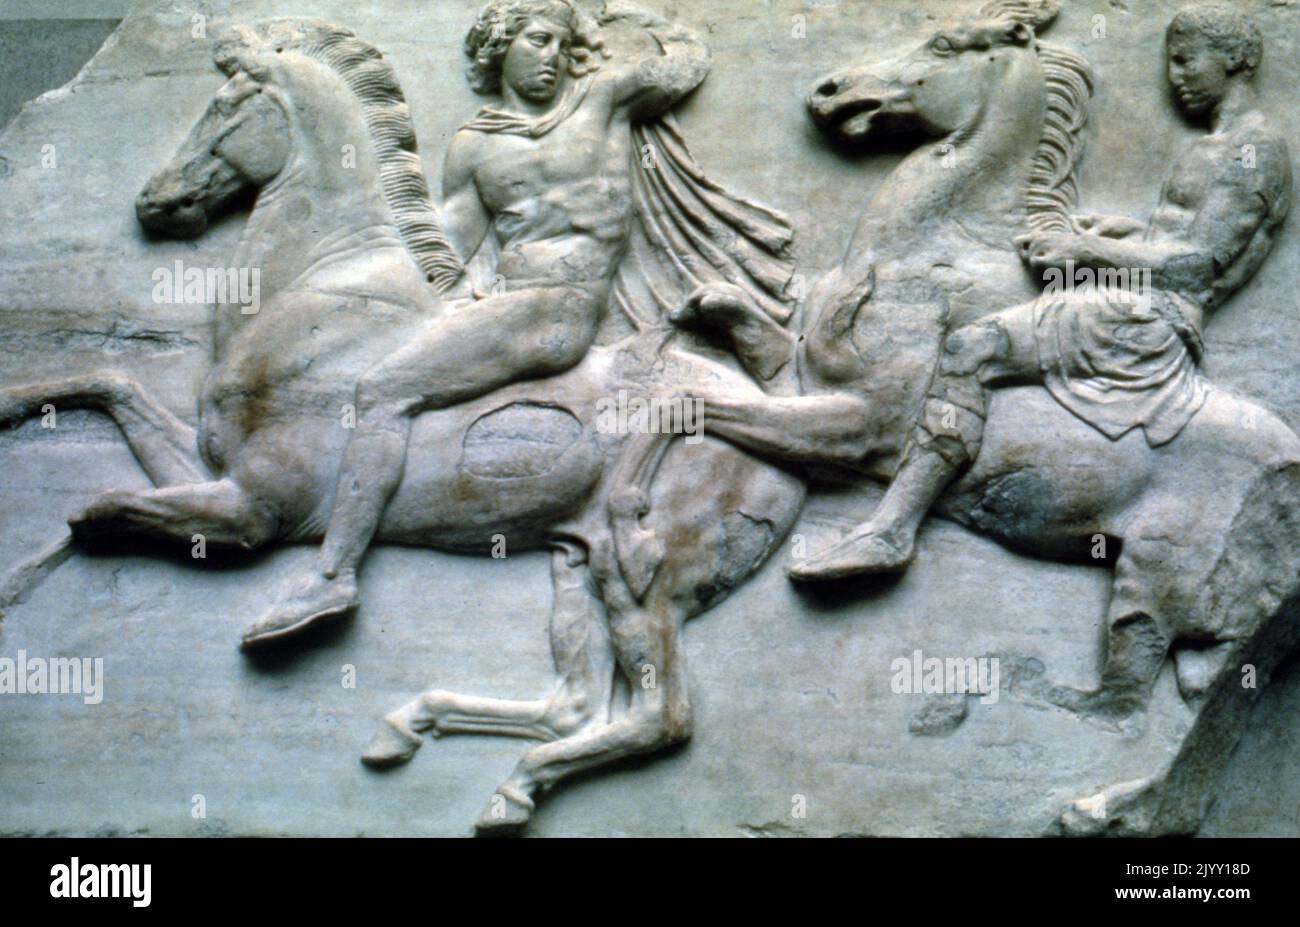 Le cavalier a représenté din un relief de marbre. Période classique, 480-323 av. J.-C. Frise occidentale du Parthénon Banque D'Images